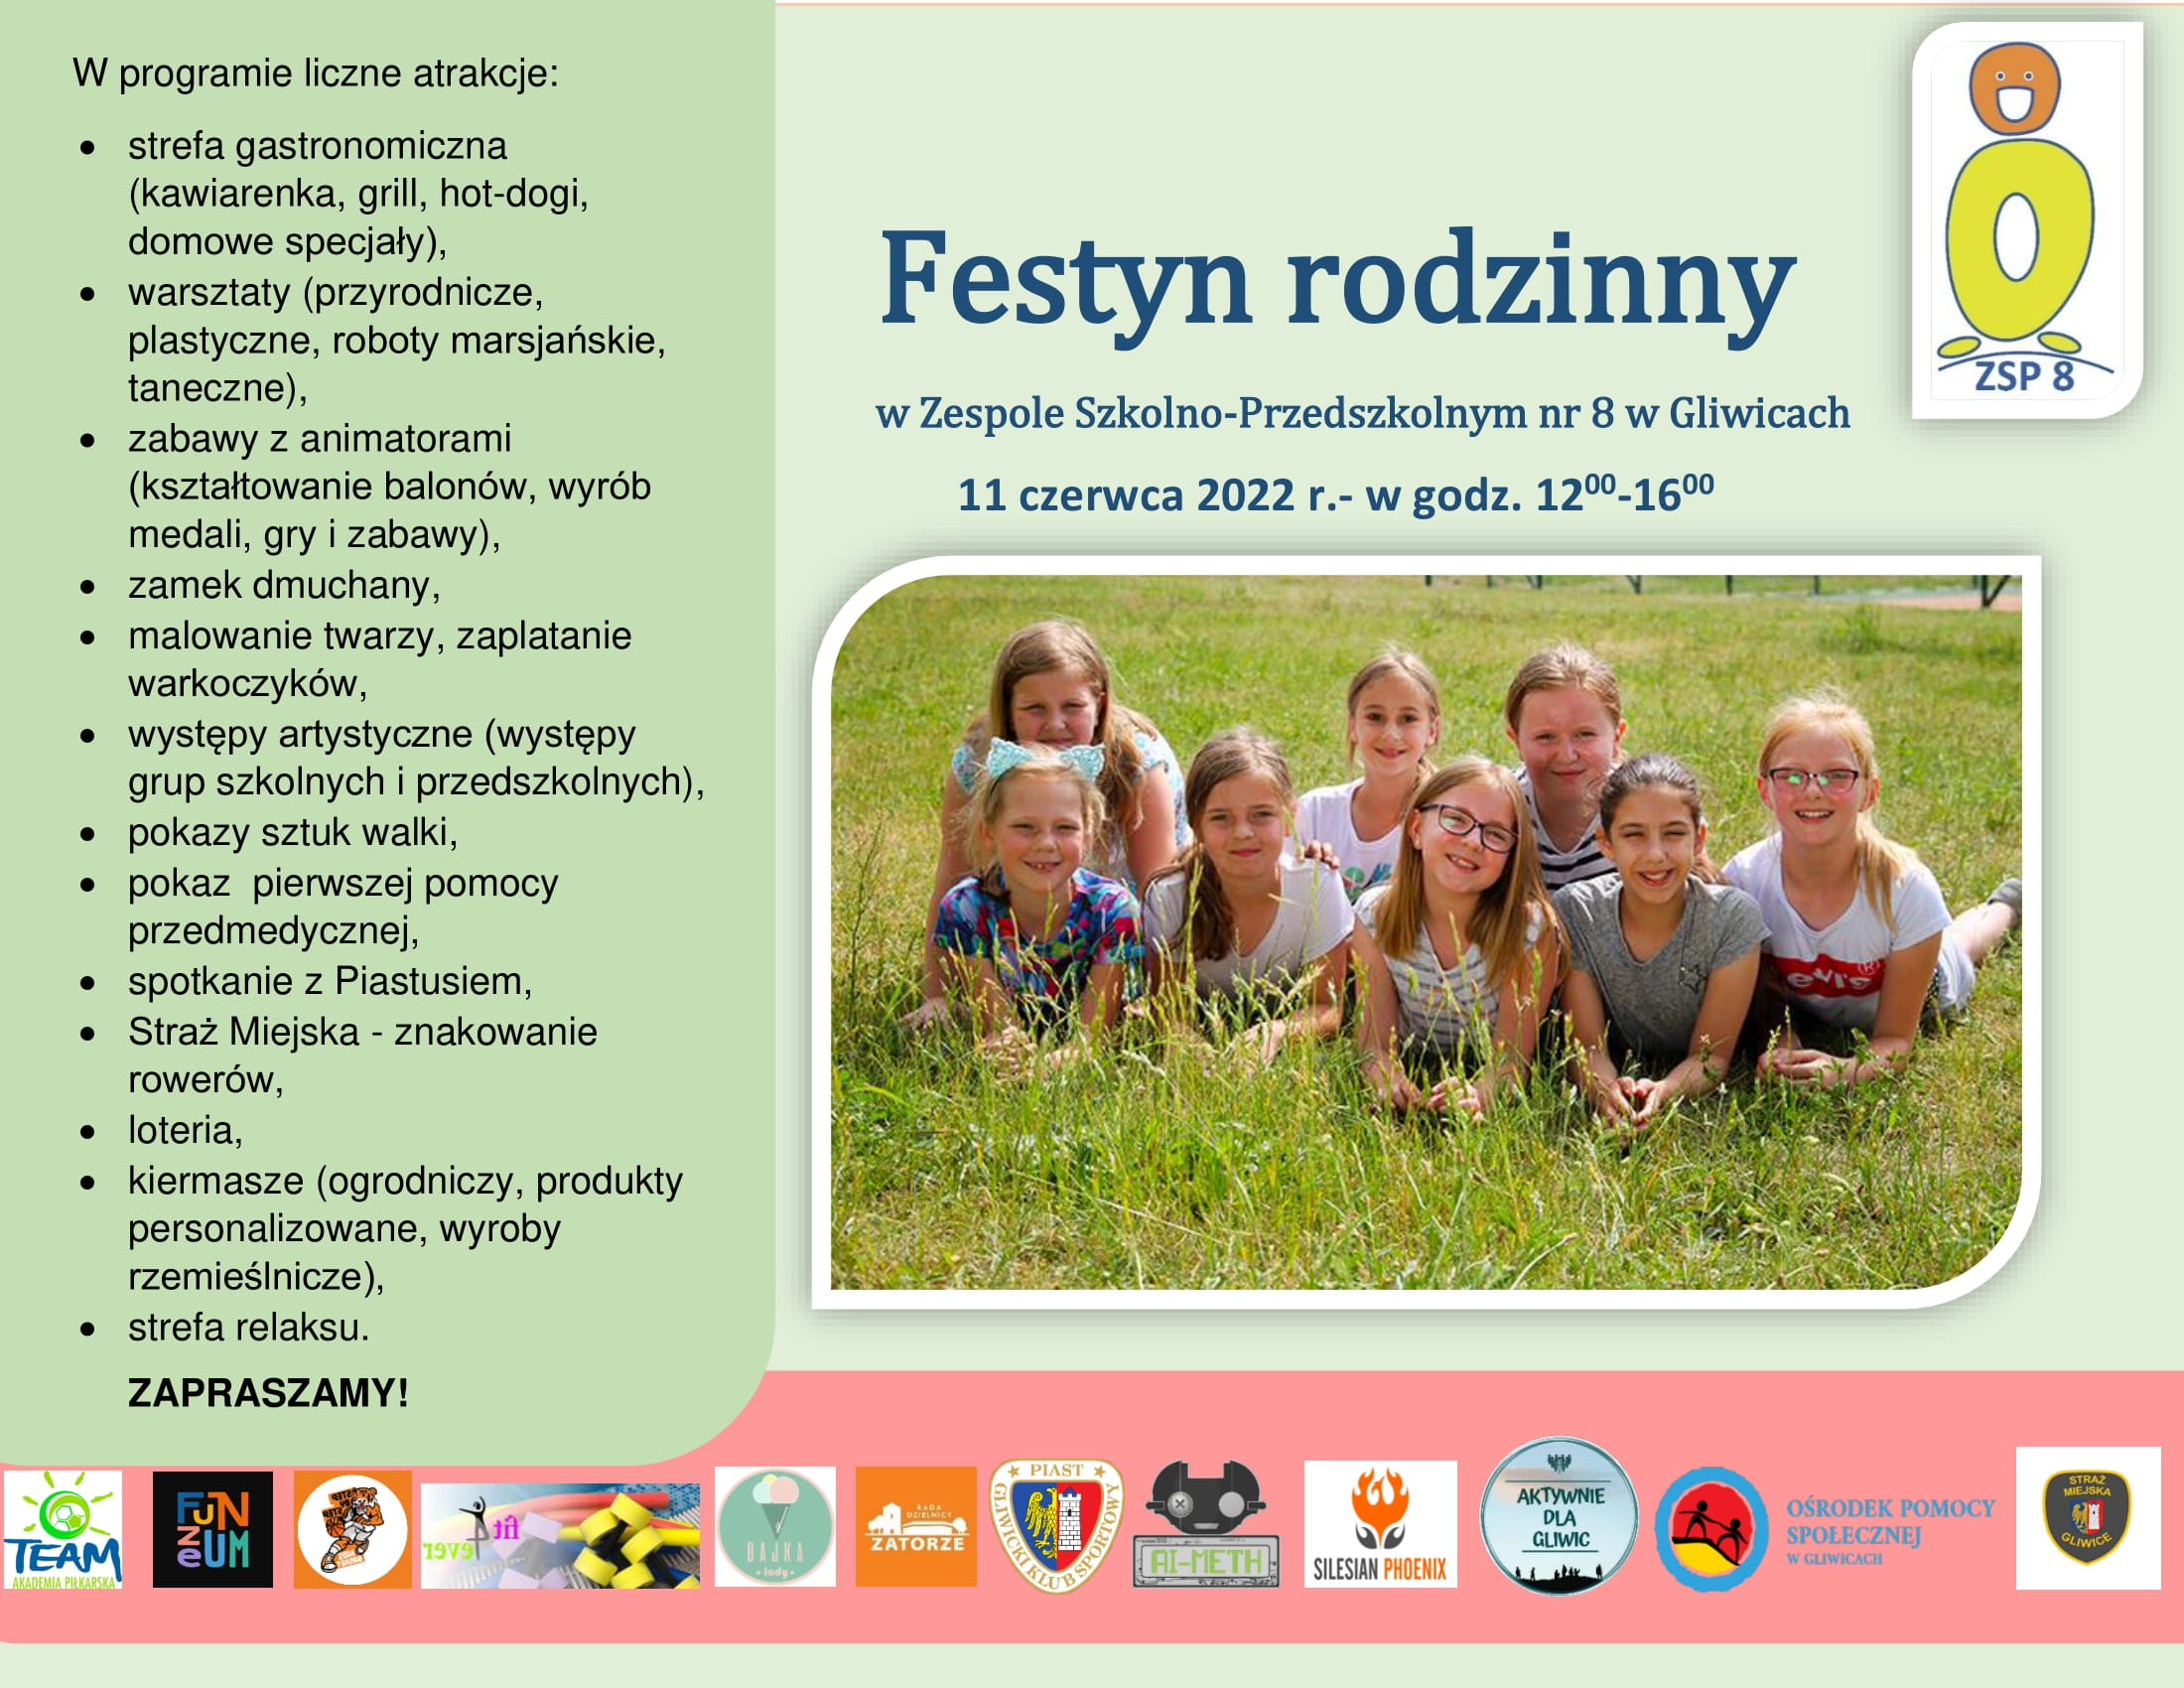 Festyn rodzinny w Zespole Szkolno-Przedszkolnym nr 8 w Gliwicach